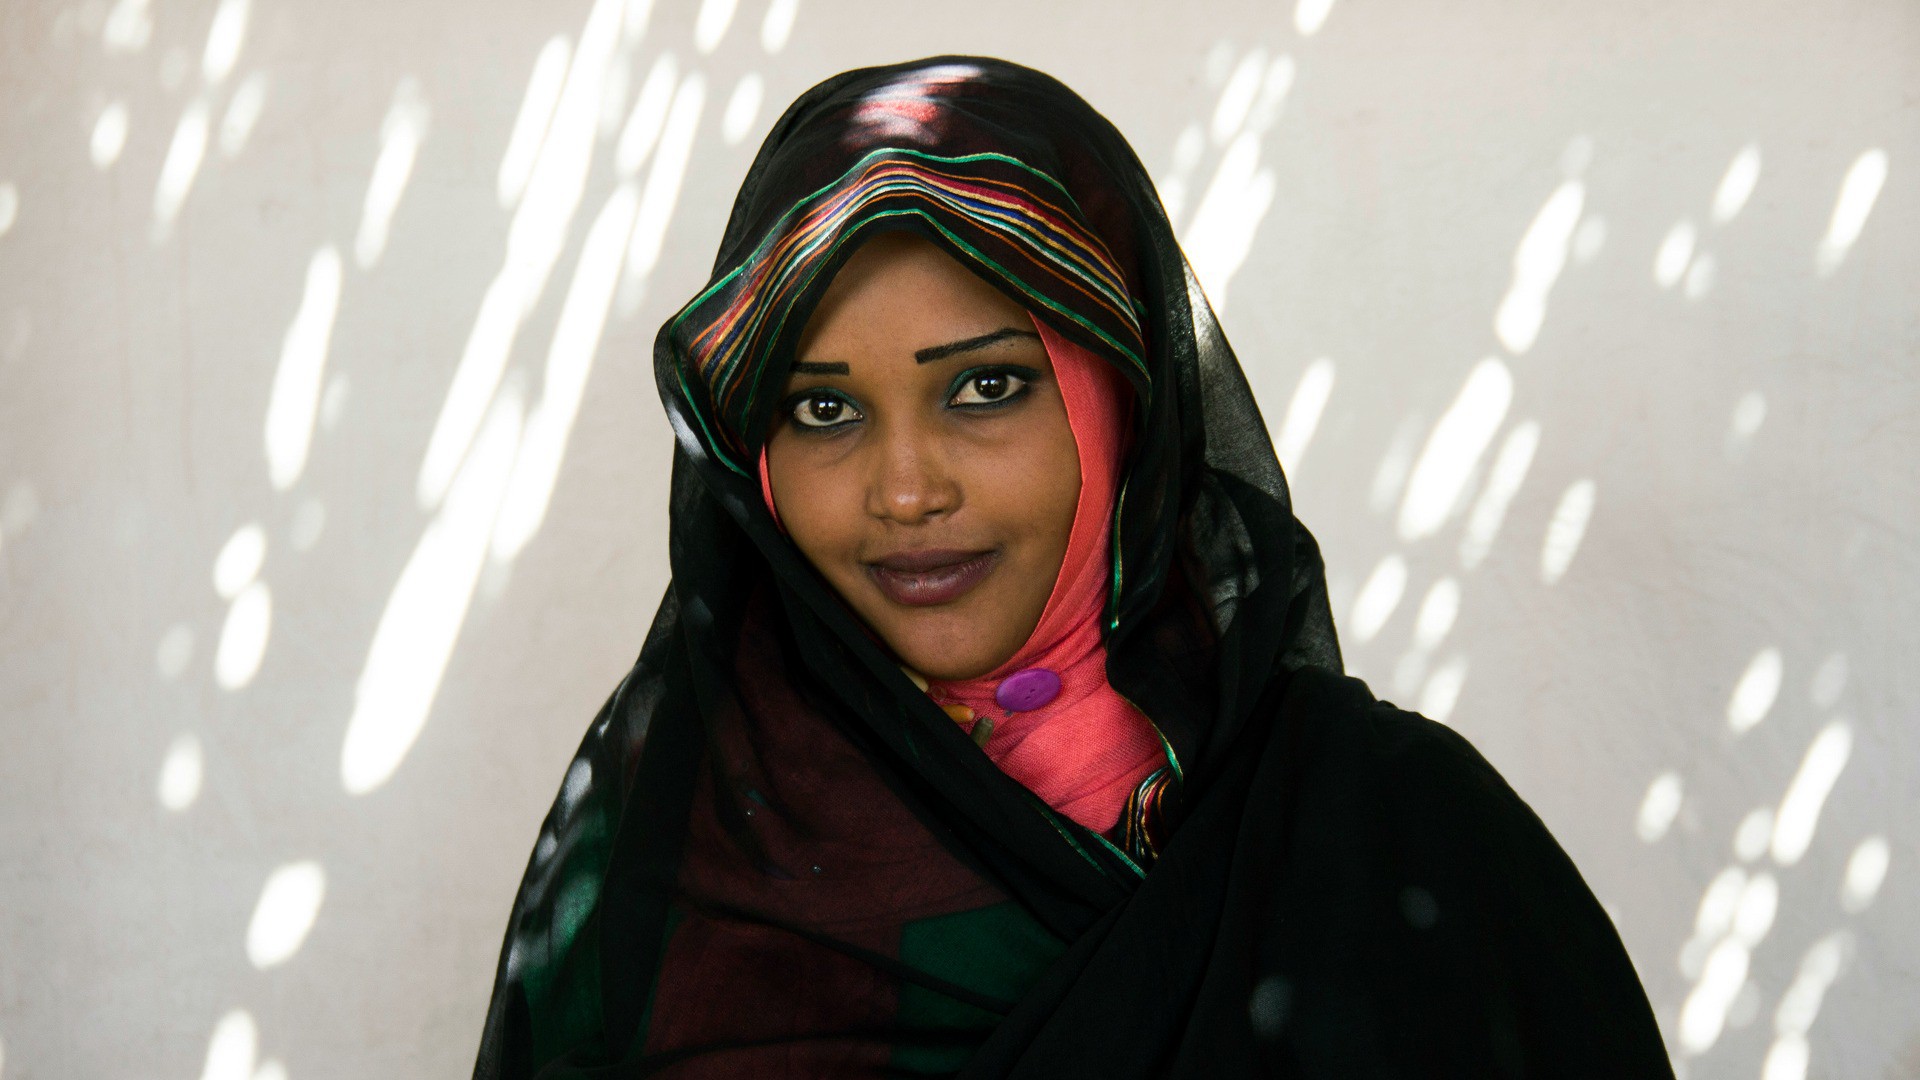 Au Soudan, la loi oblige à se vêtir "décemment" (Photo d'illustration:Christiaan Triebert/Flickr/CC BY 2.0)